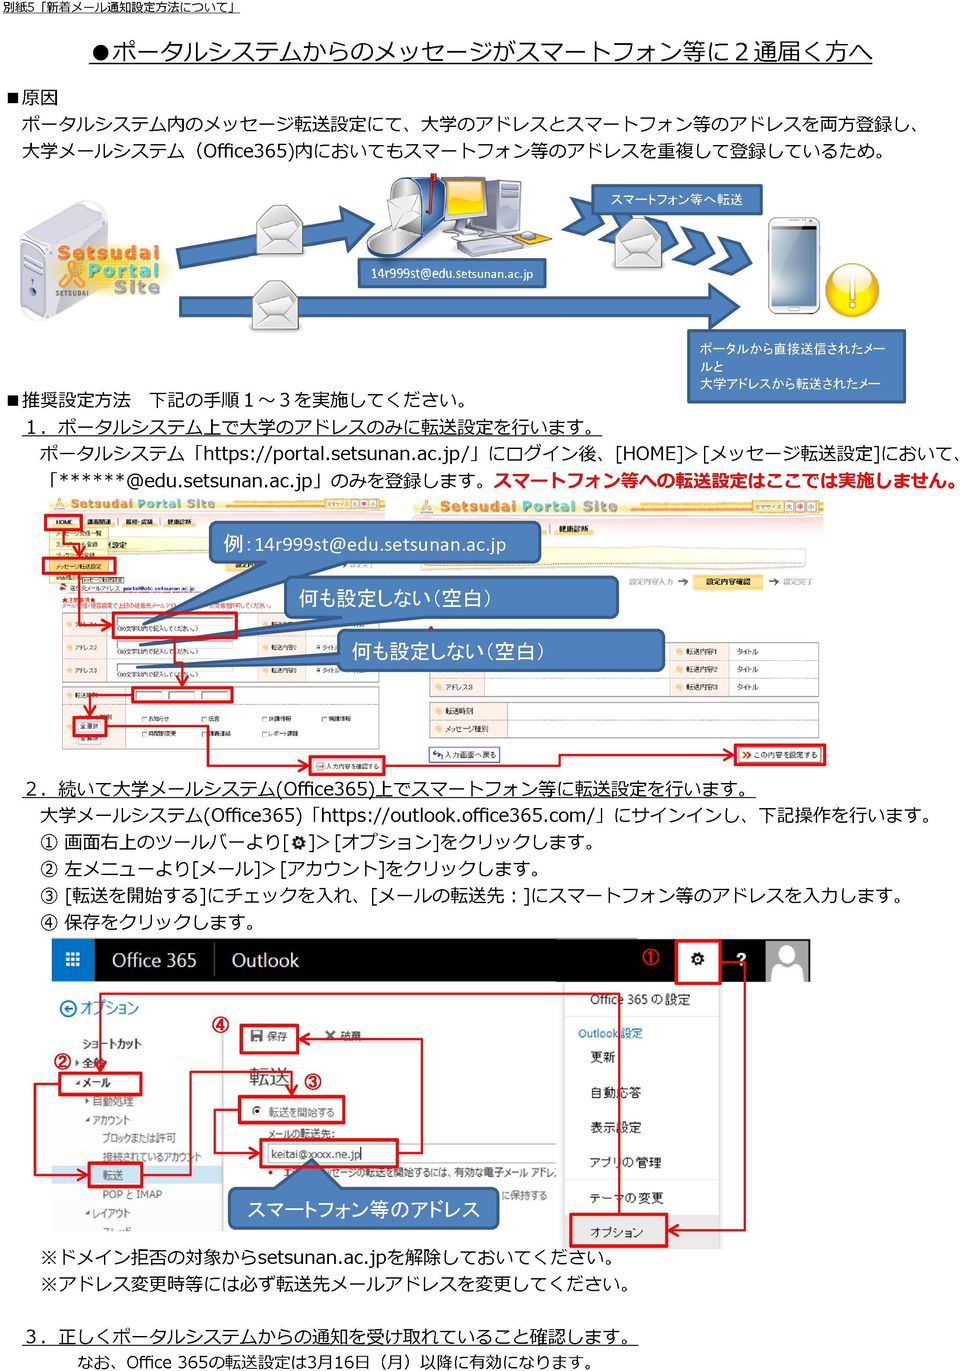 setsunan.ac.jp のみを 登 録 します スマートフォン 等 への 転 送 設 定 はここでは 実 施 しません 例 :4r999st@edu.setsunan.ac.jp 何 も 設 定 しない( 空 白 ) 何 も 設 定 しない( 空 白 ).